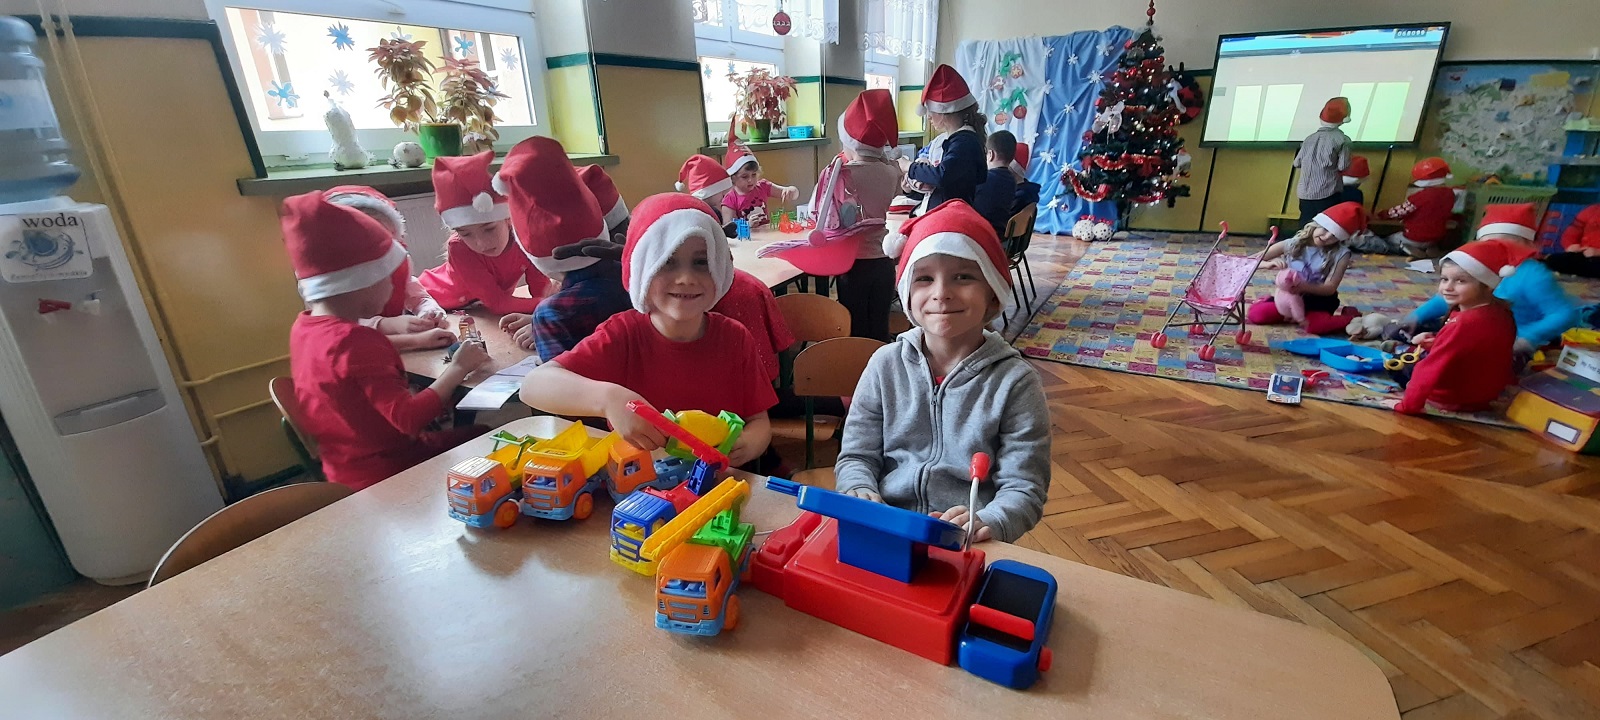 Na zdjęciu dzieci bawiące się zabawkami od świętego Mikołaja